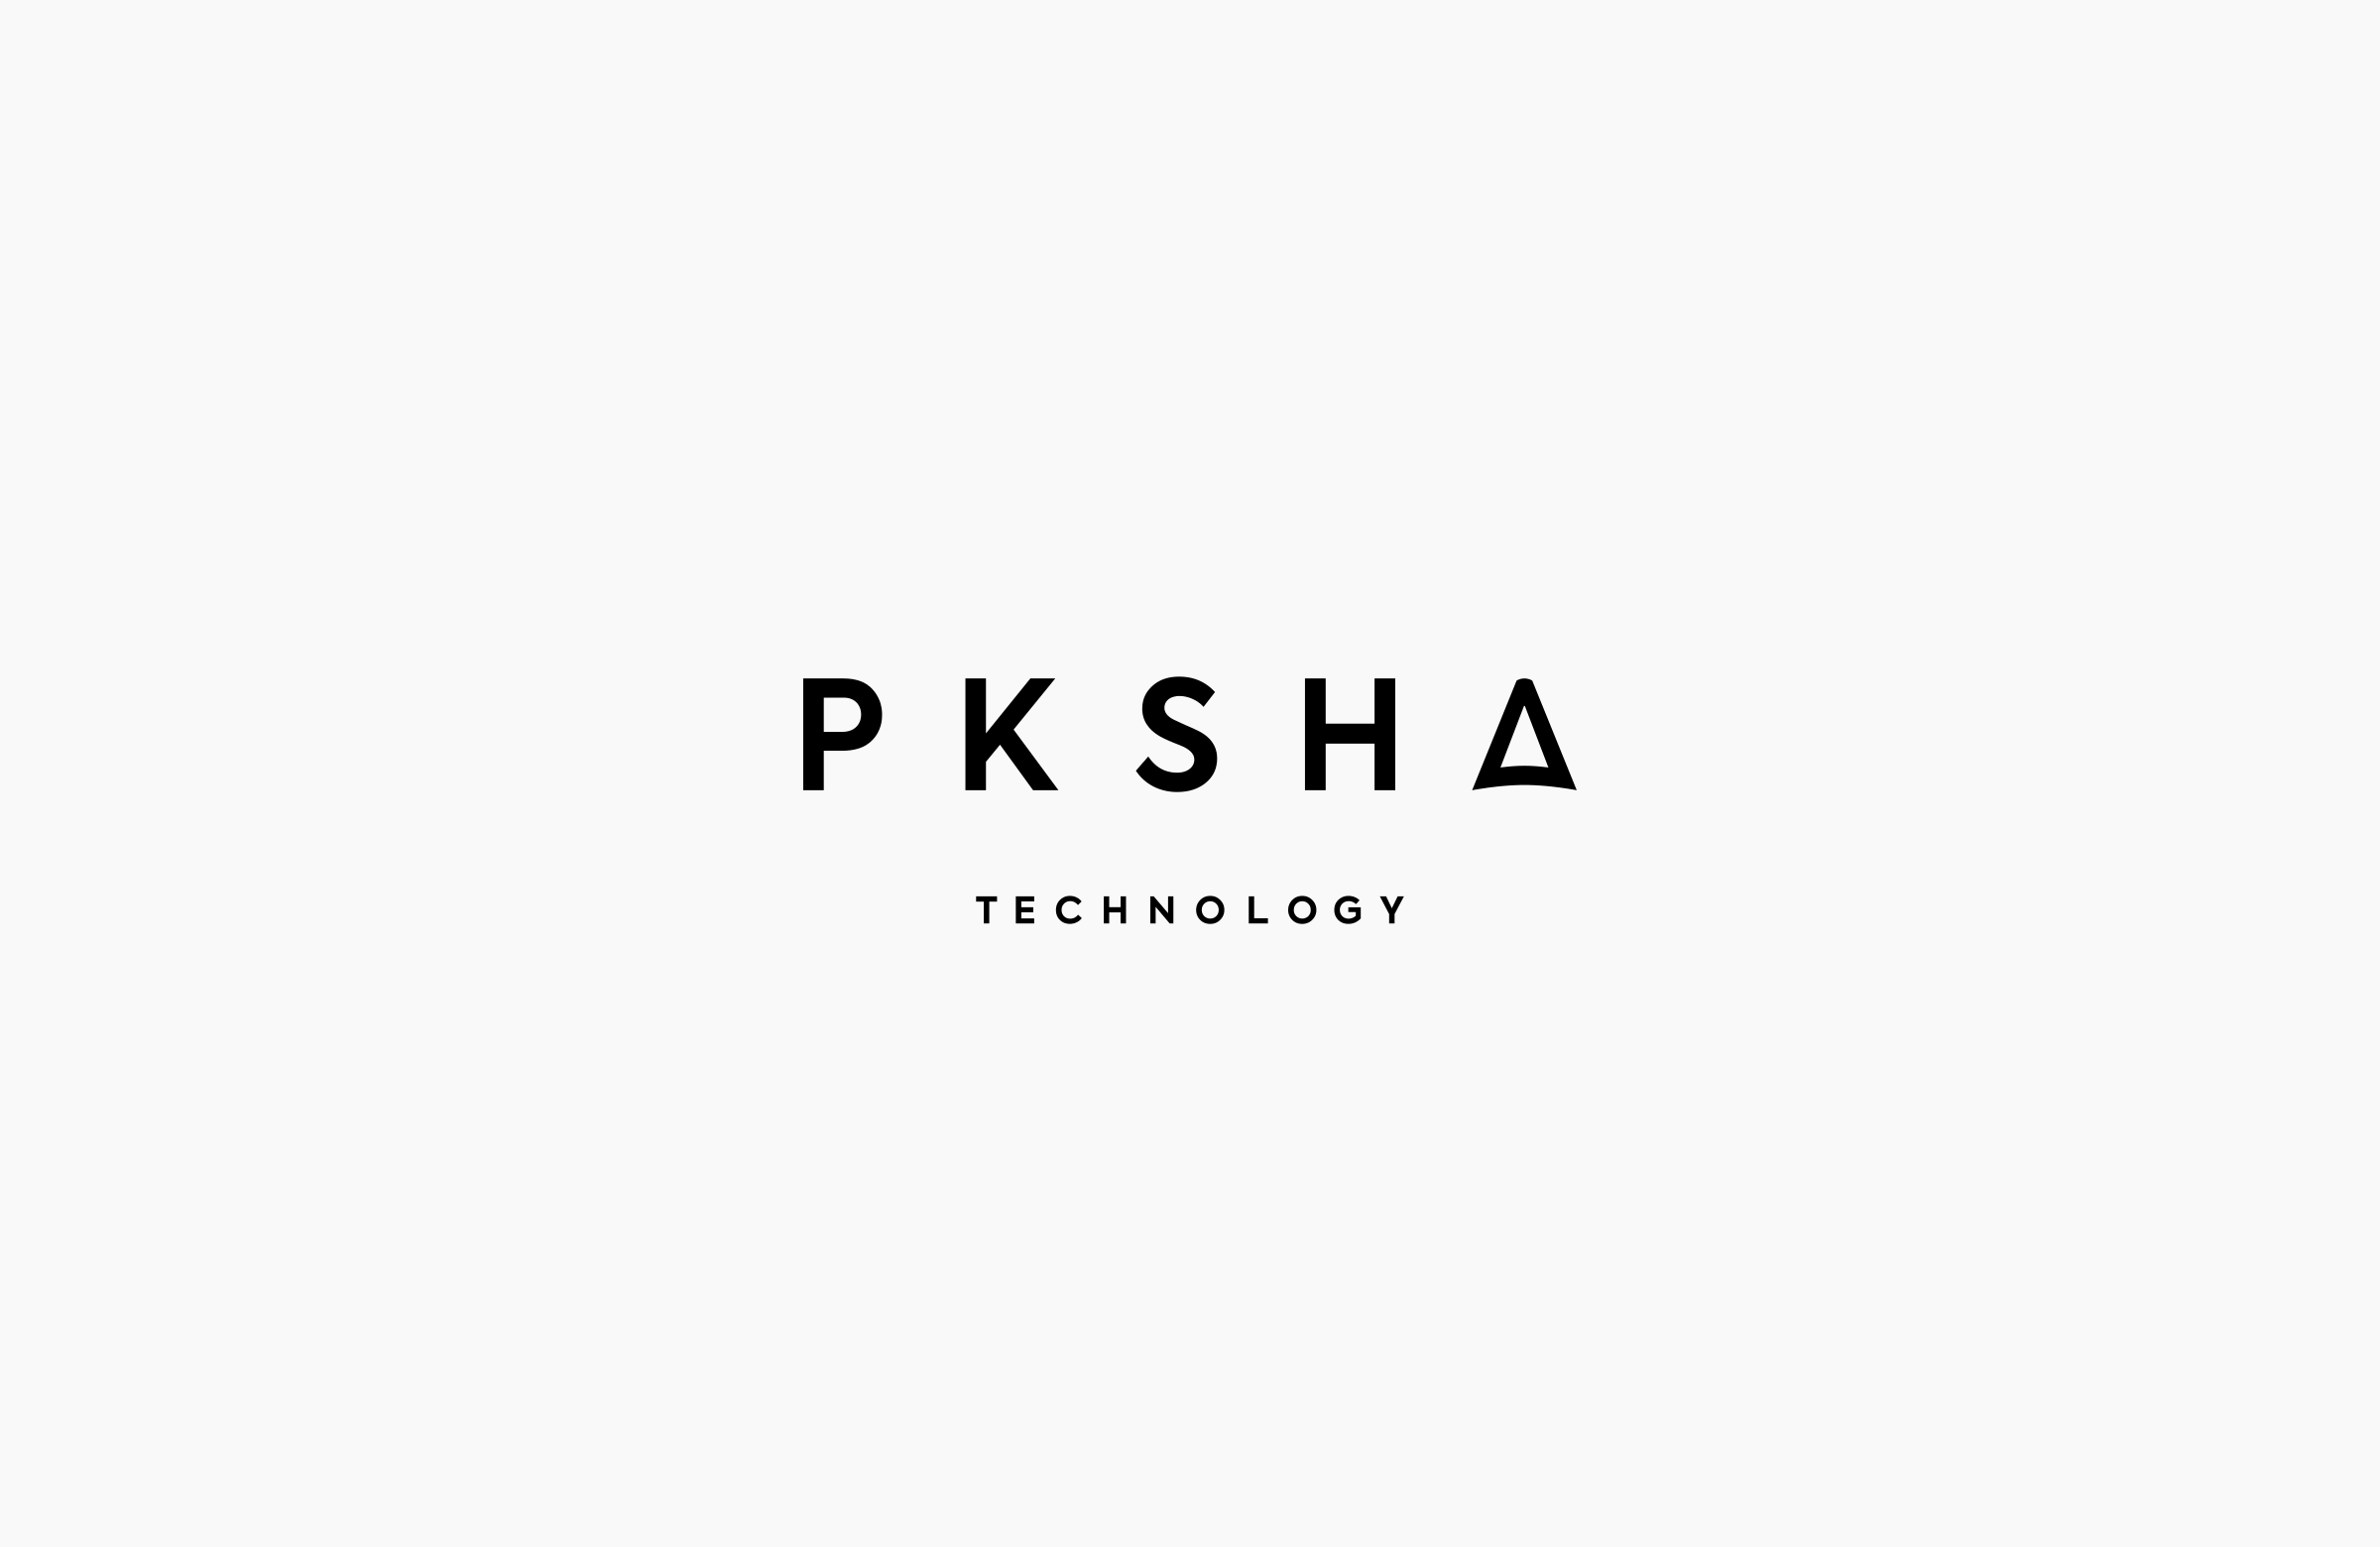 PKSHA Technology